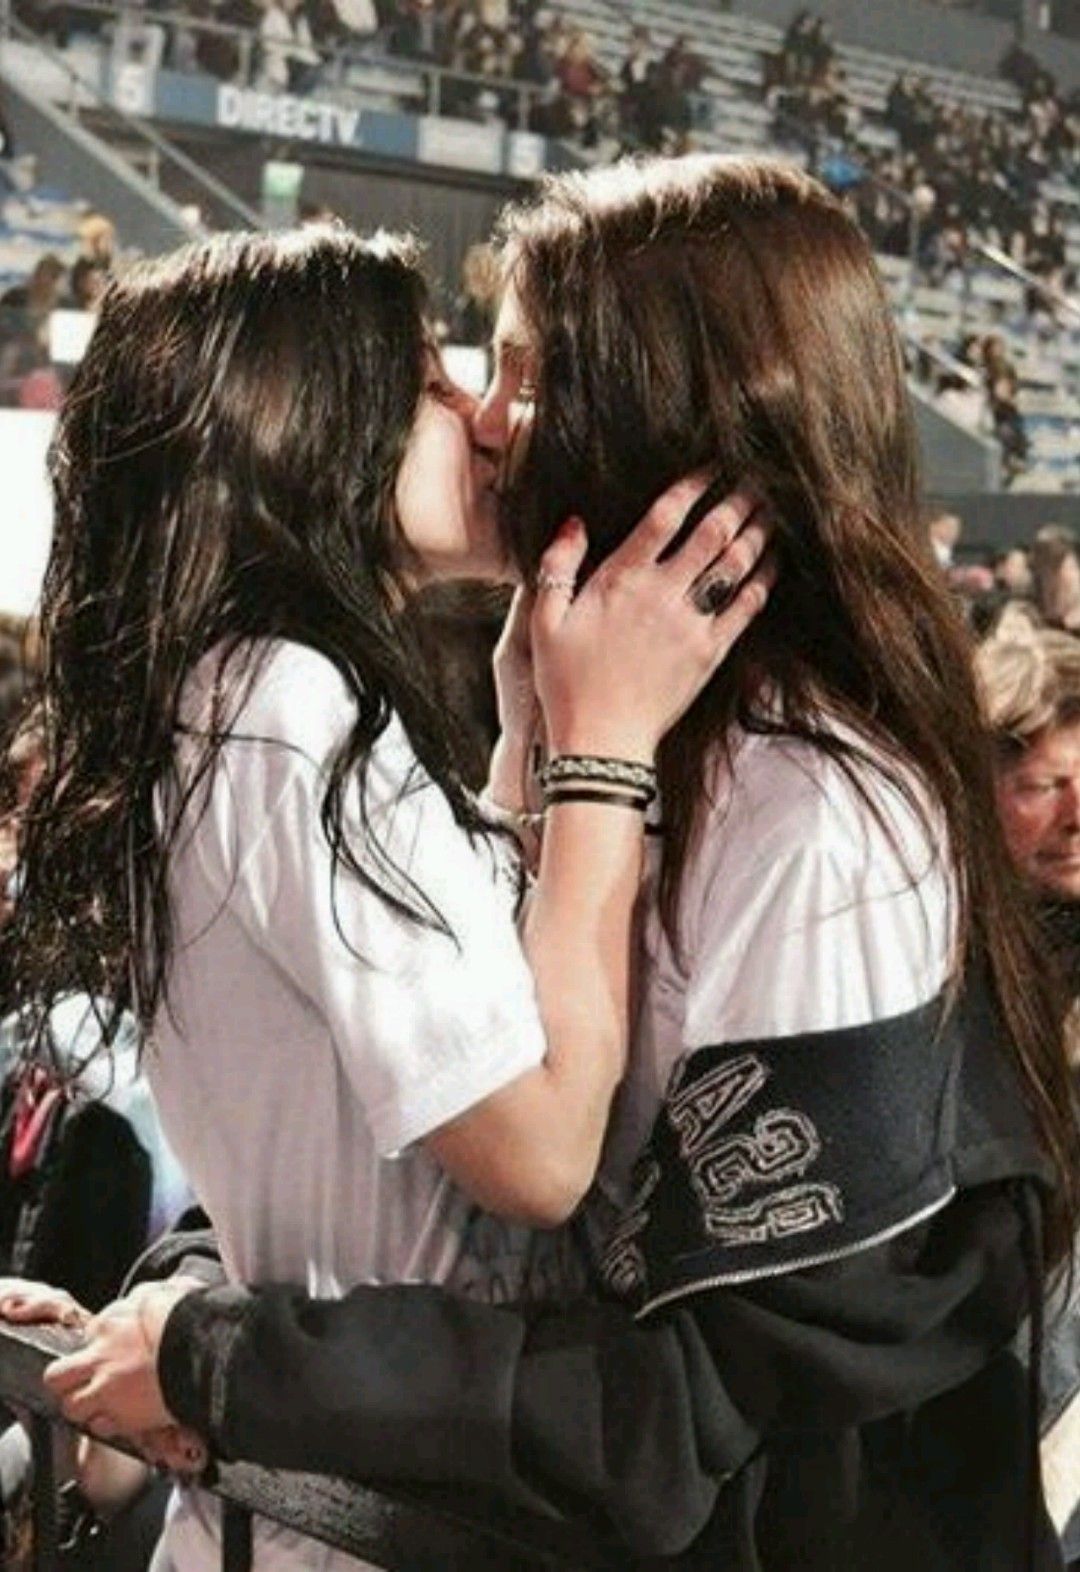 Lesbians kissing at sport stadium. Cute lesbian couples, Lesbians kissing, Lesbian girls